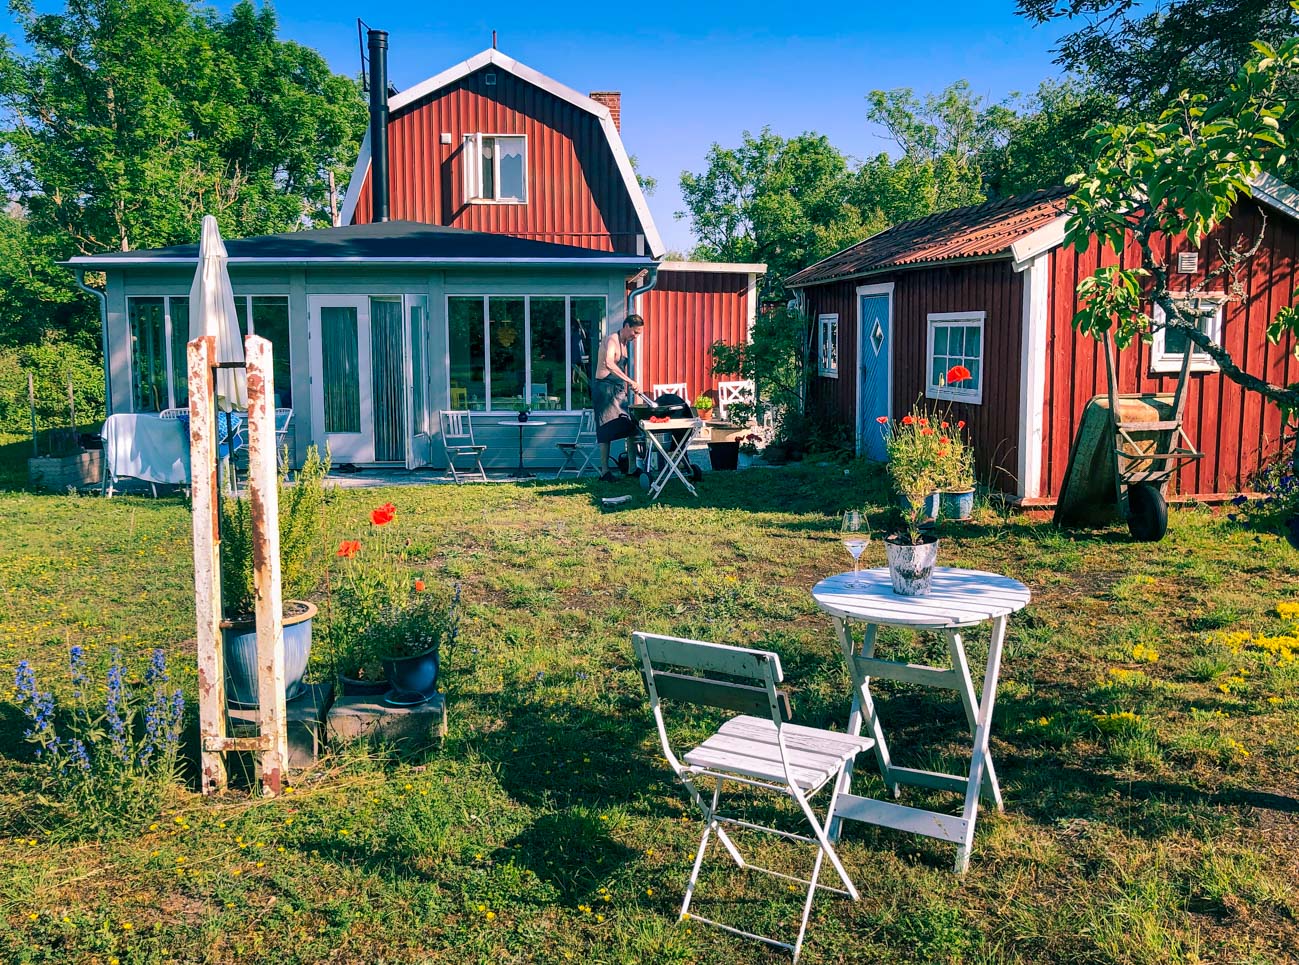 32 utflykter att göra på norra Gotland | Fantasiresor